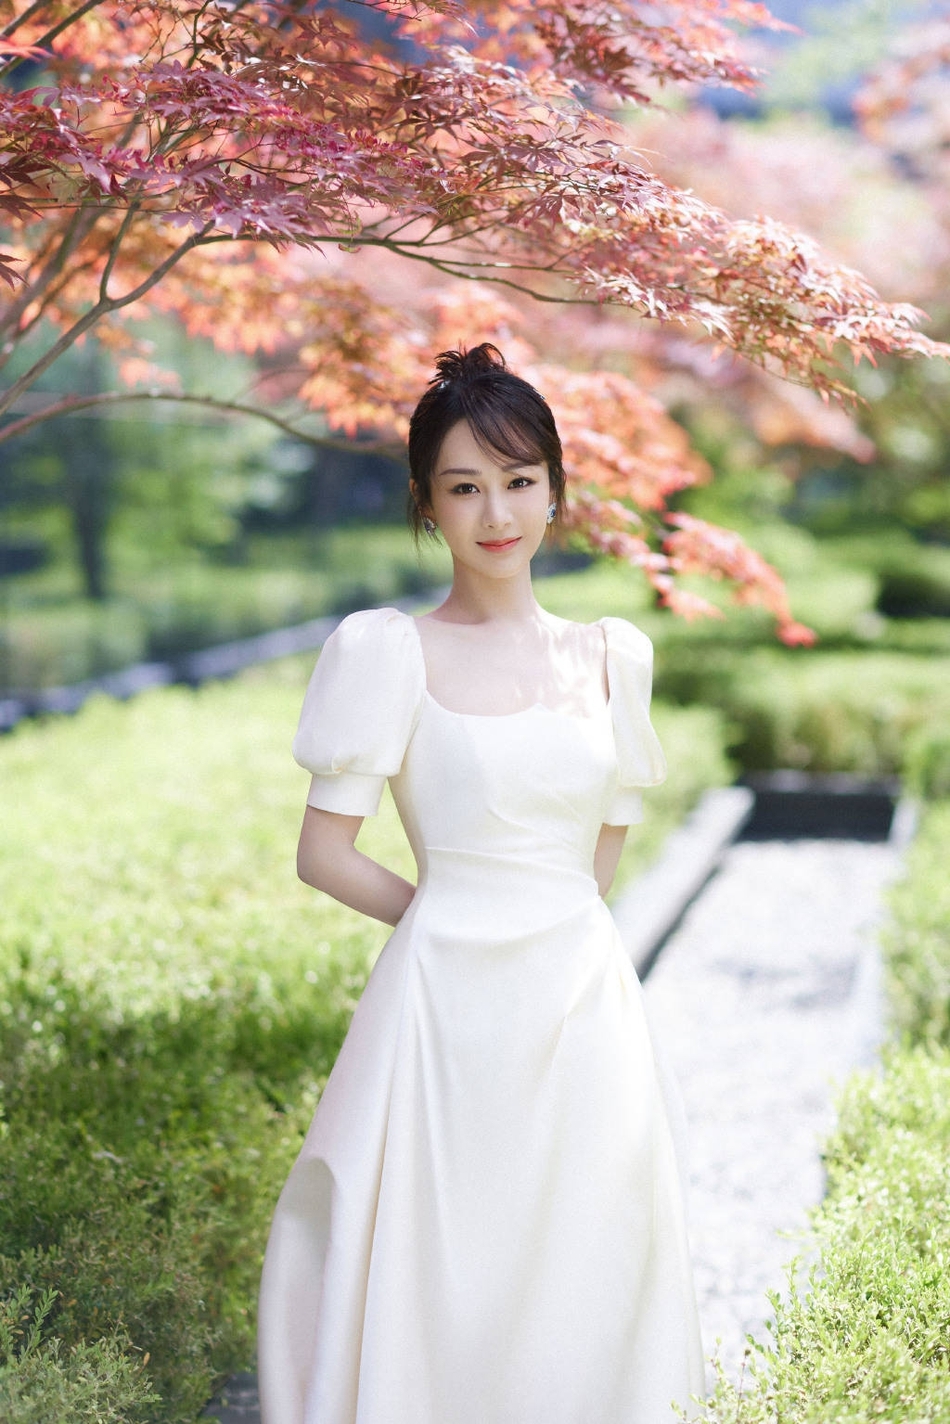 杨紫穿白裙置身红叶中 低头浅笑温婉可人